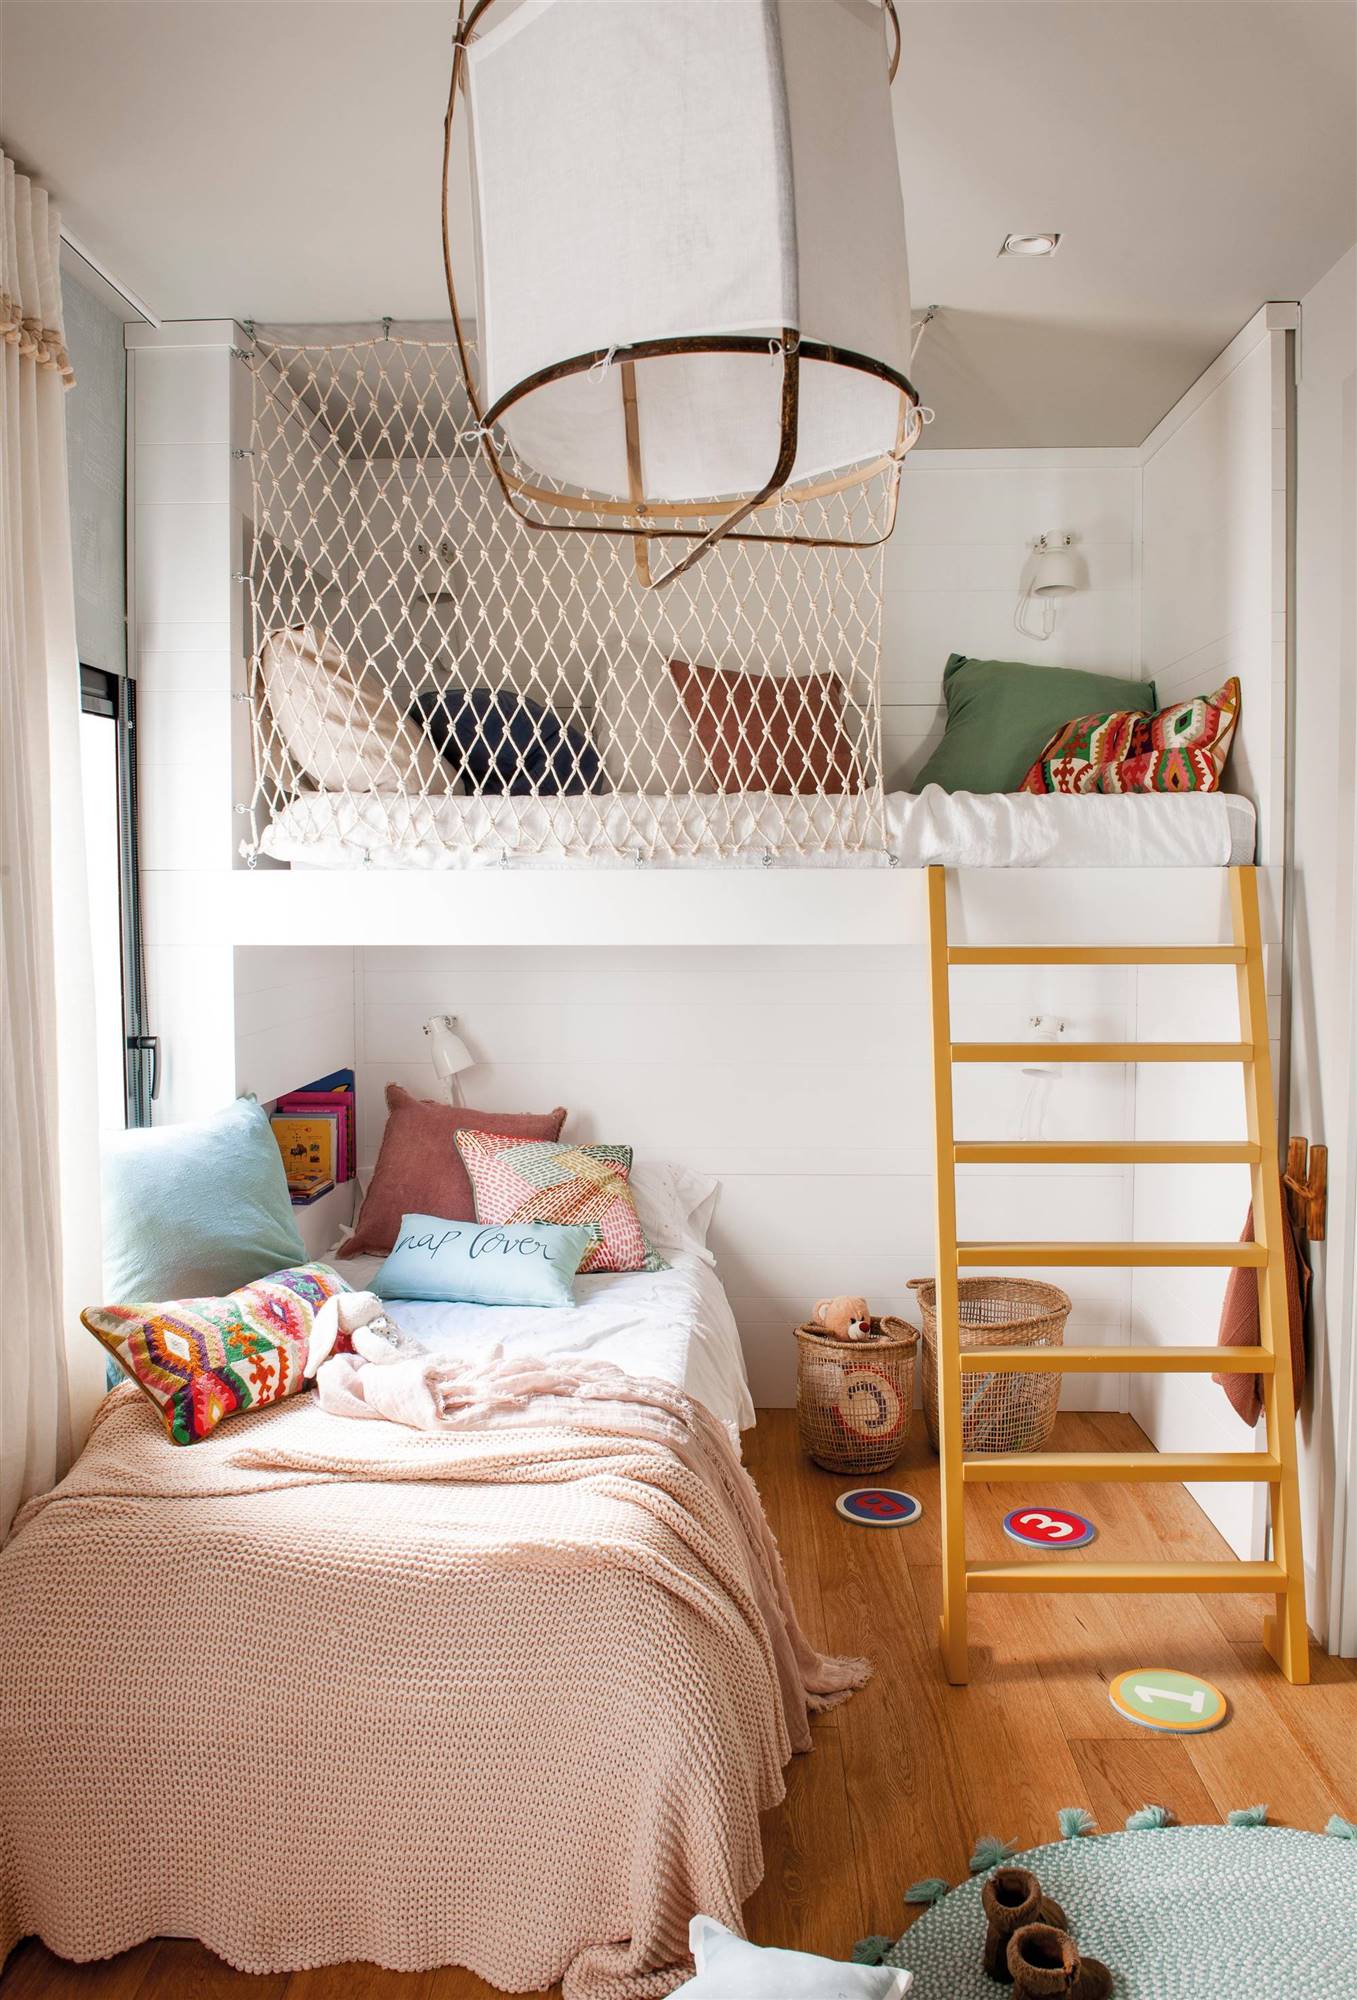 Habitación infantil con cama alta y cama inferior arrimada a la pared 00501700